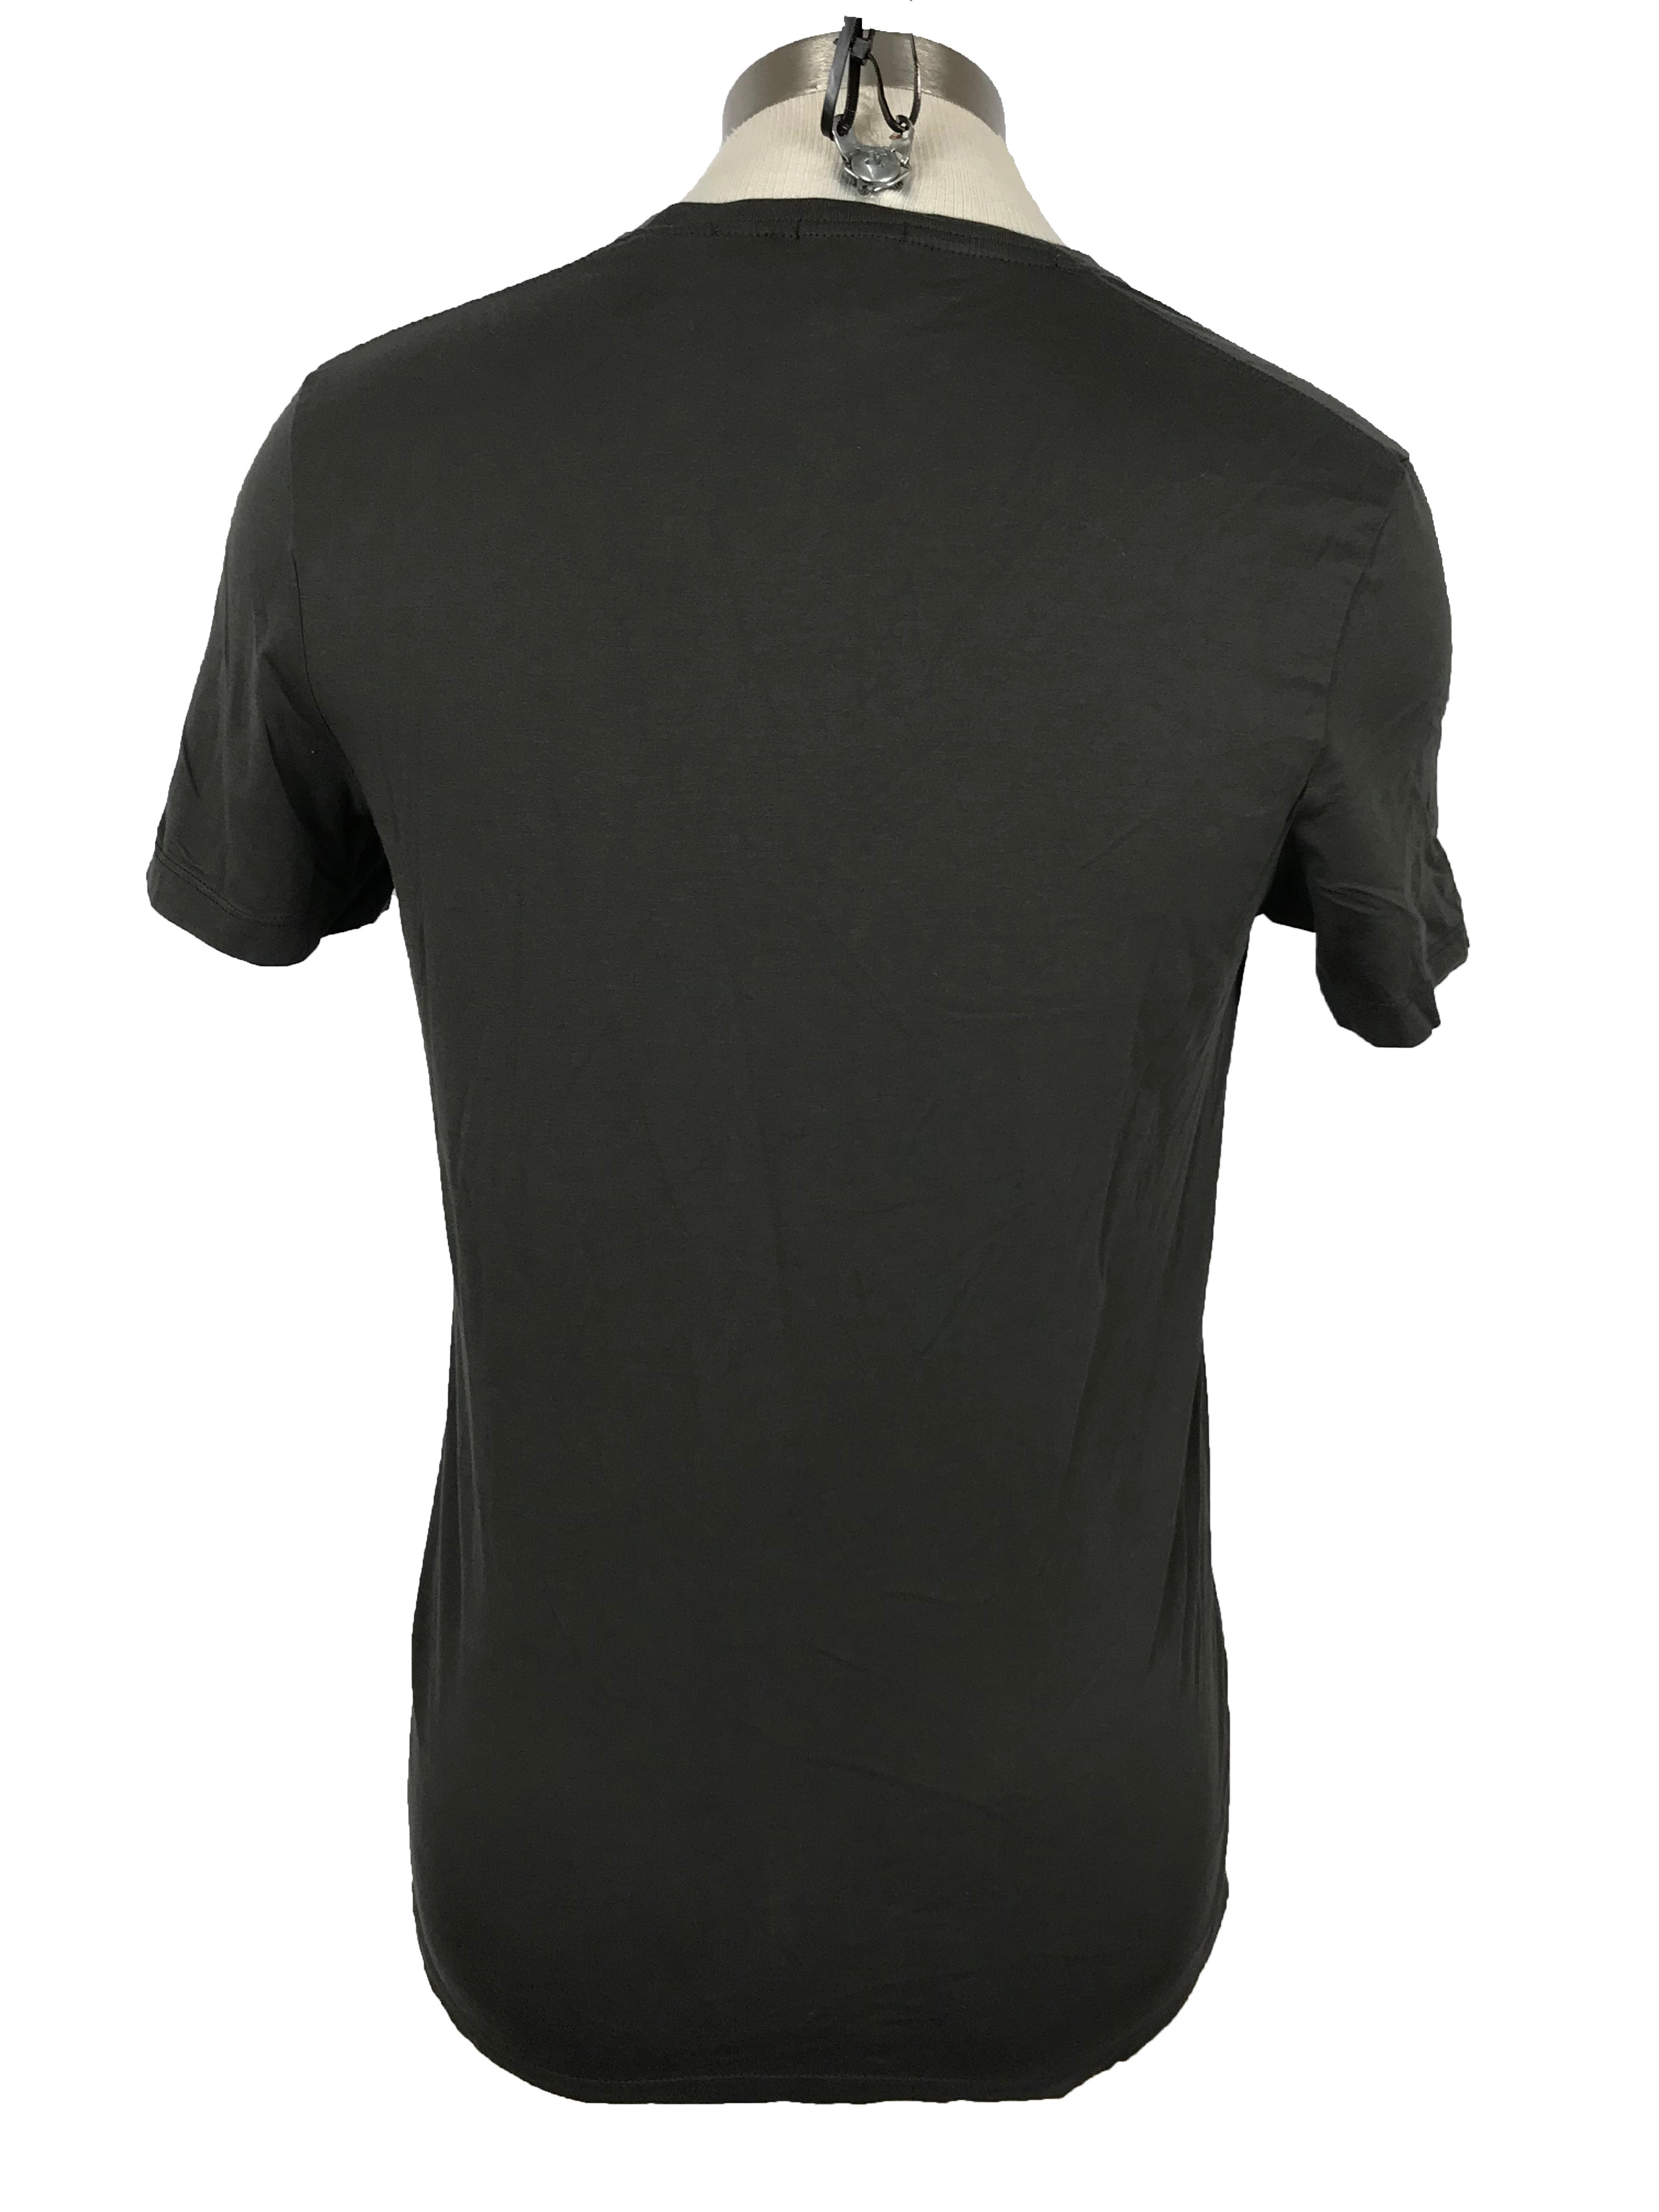 Hugo Boss Gray V-Neck Slim Fit  T-Shirt Men's Size Small